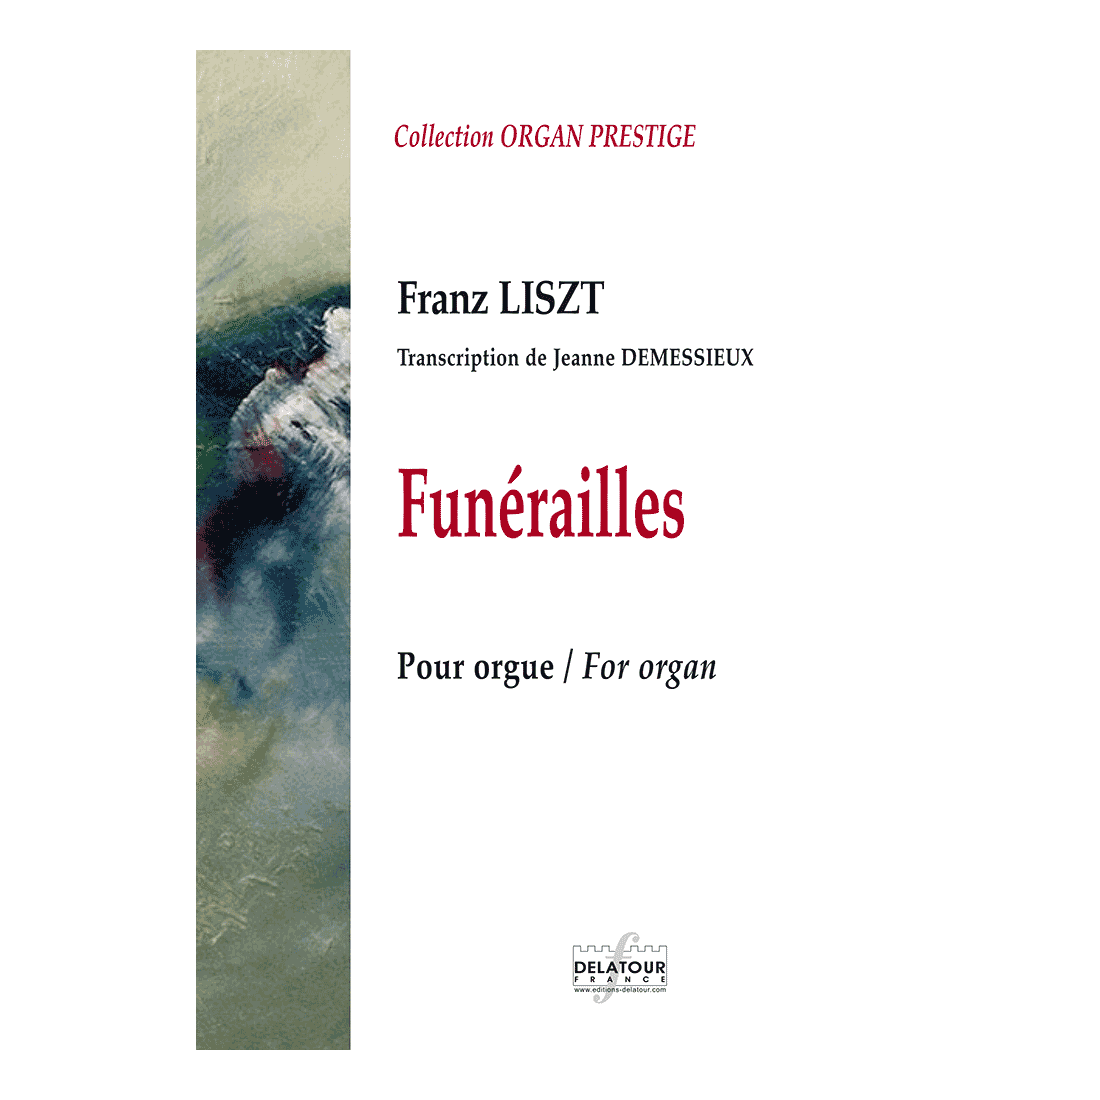 Funérailles de Liszt (Transcription für Orgel von Jeanne DEMESSIEUX)